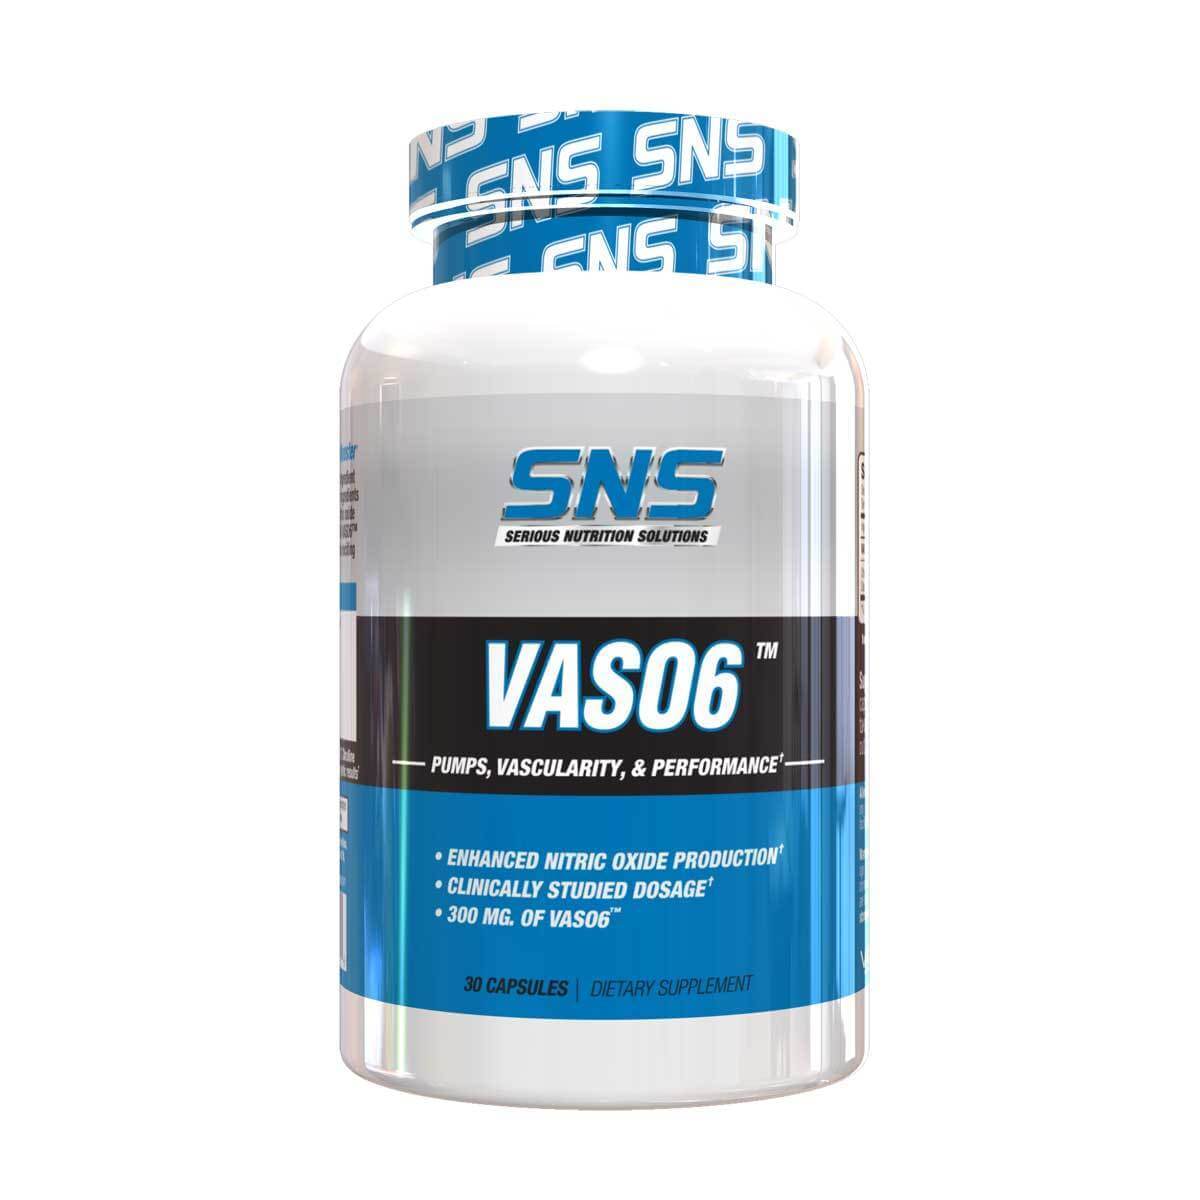 SNS Vaso6